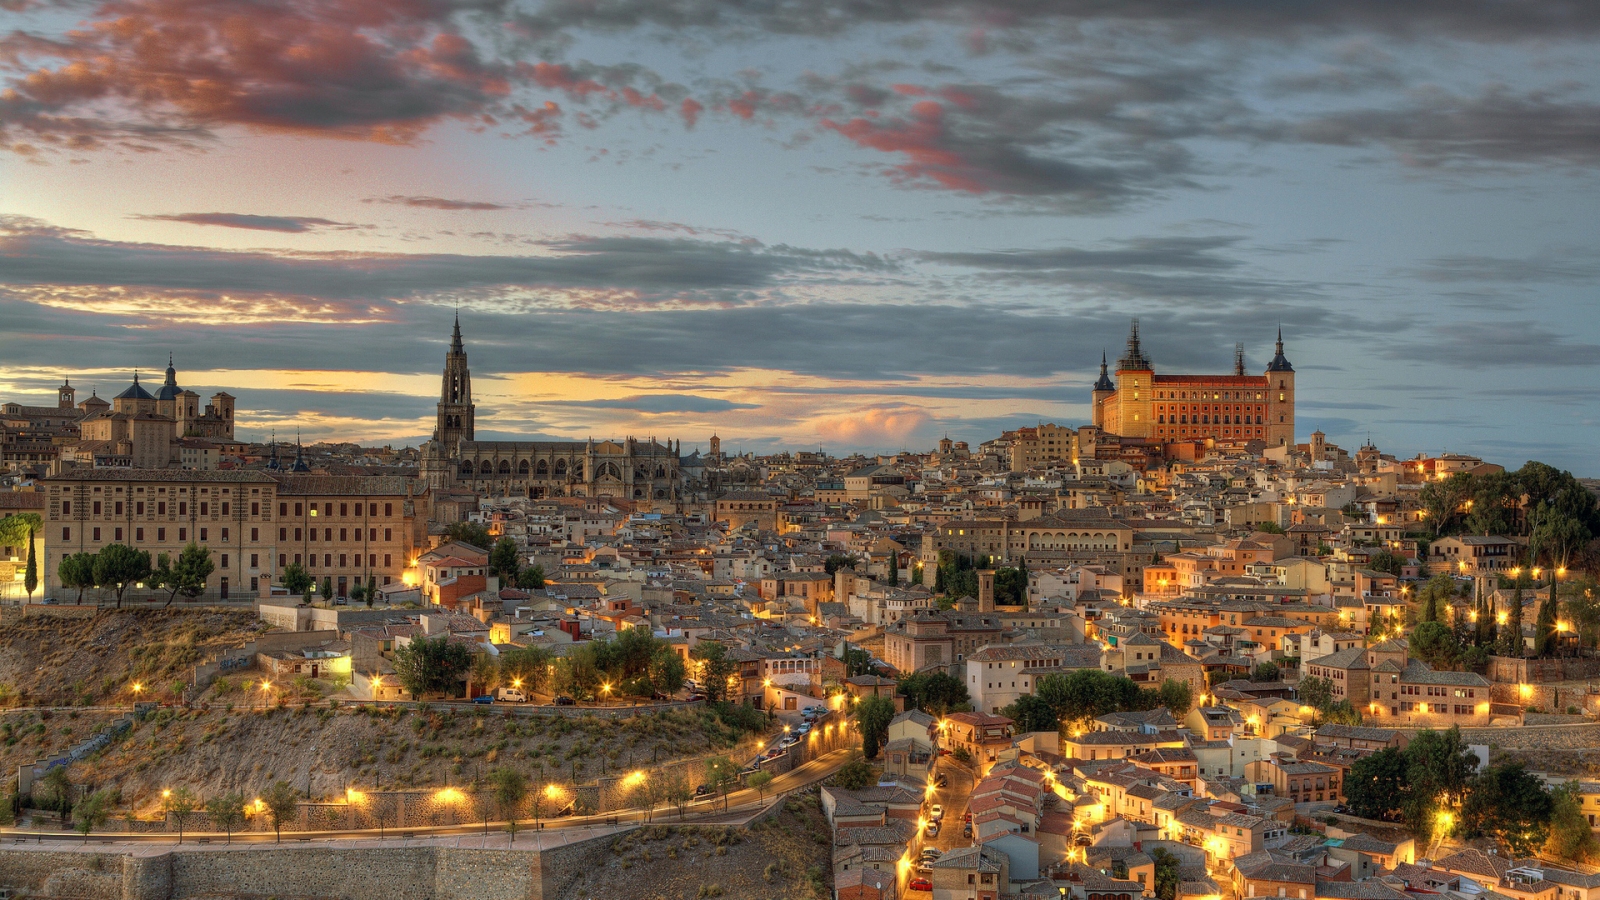 Toledo Spain Landscape for 1600 x 900 HDTV resolution